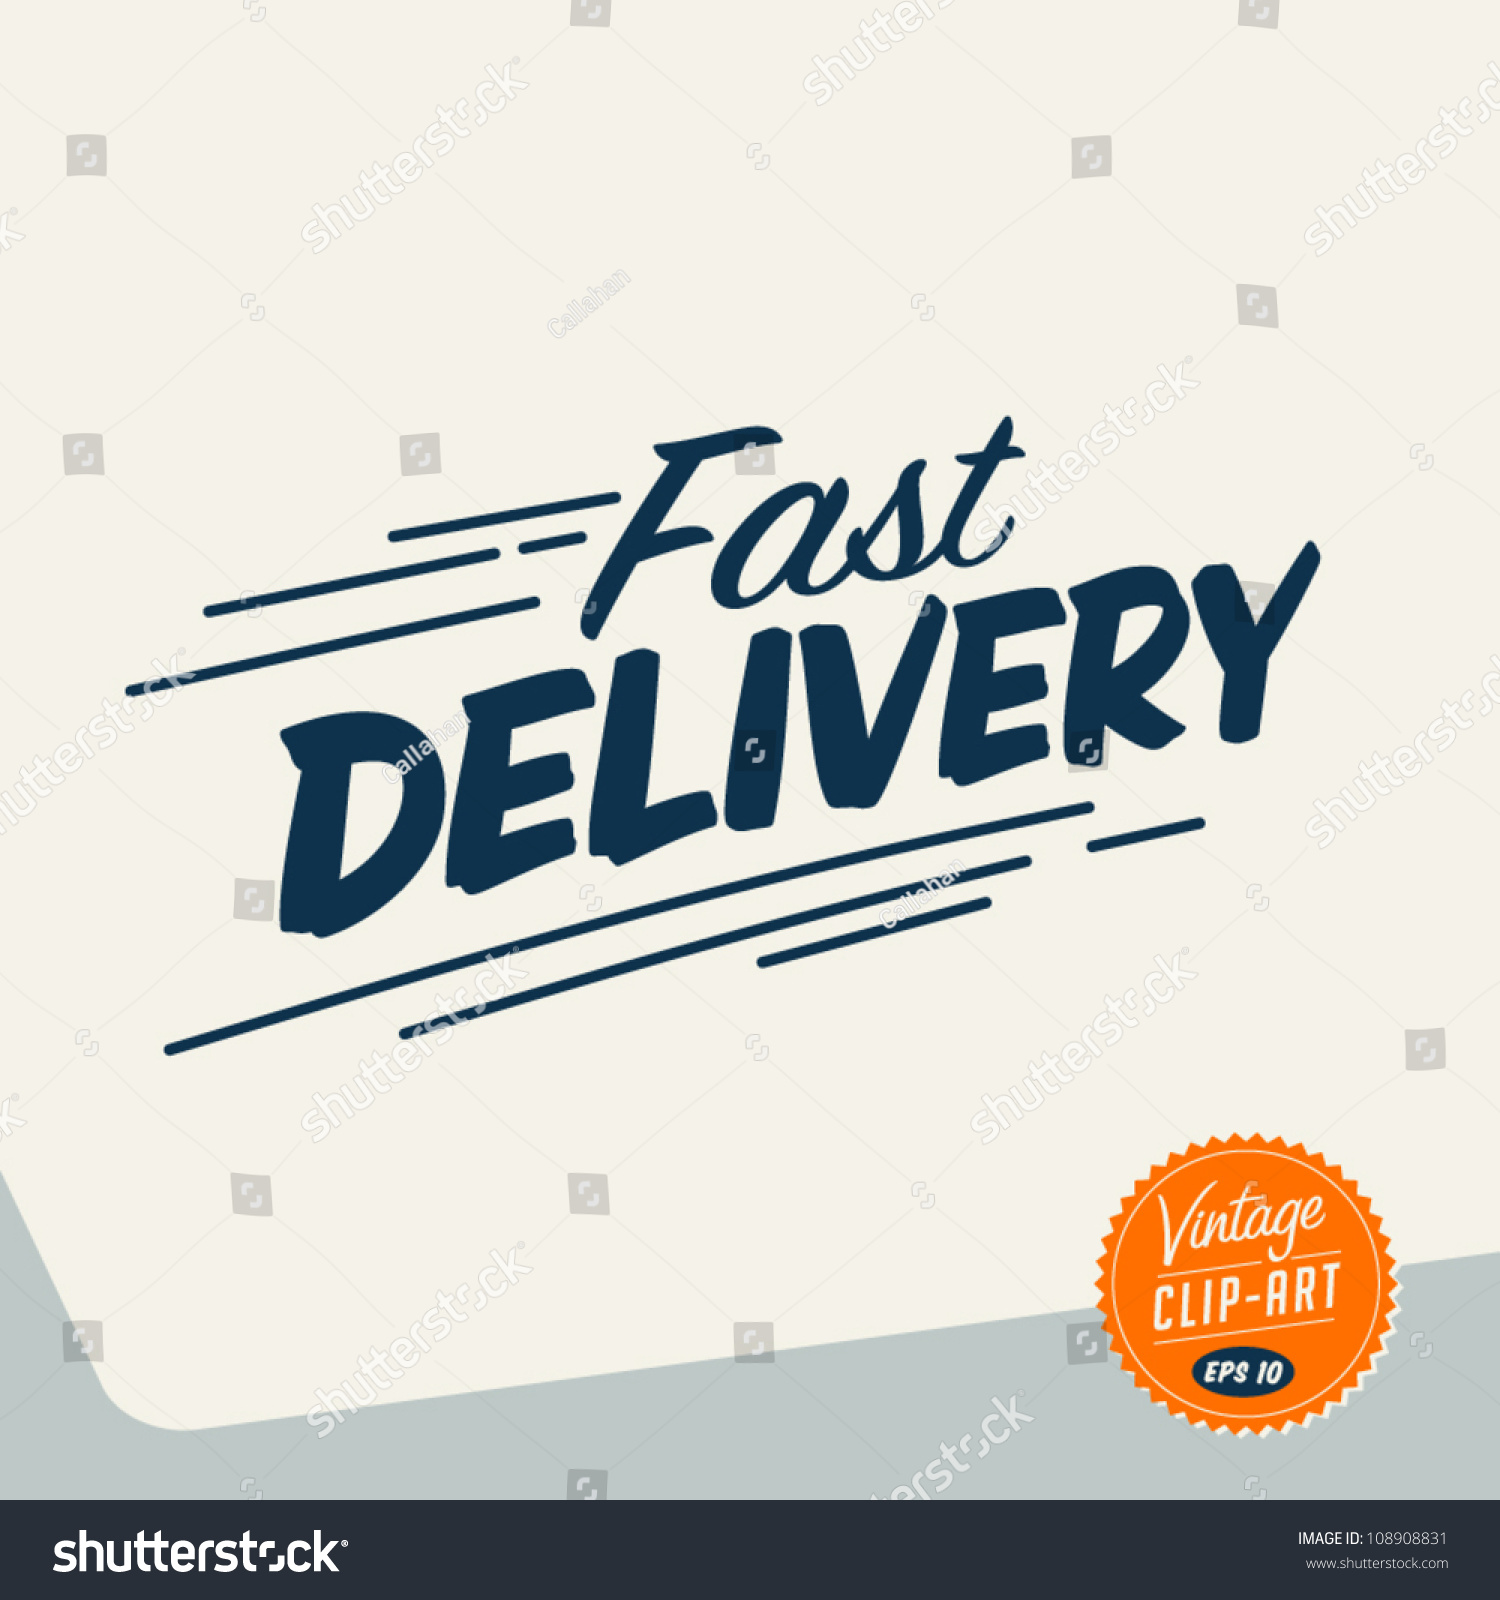 delivery service clip art - photo #21